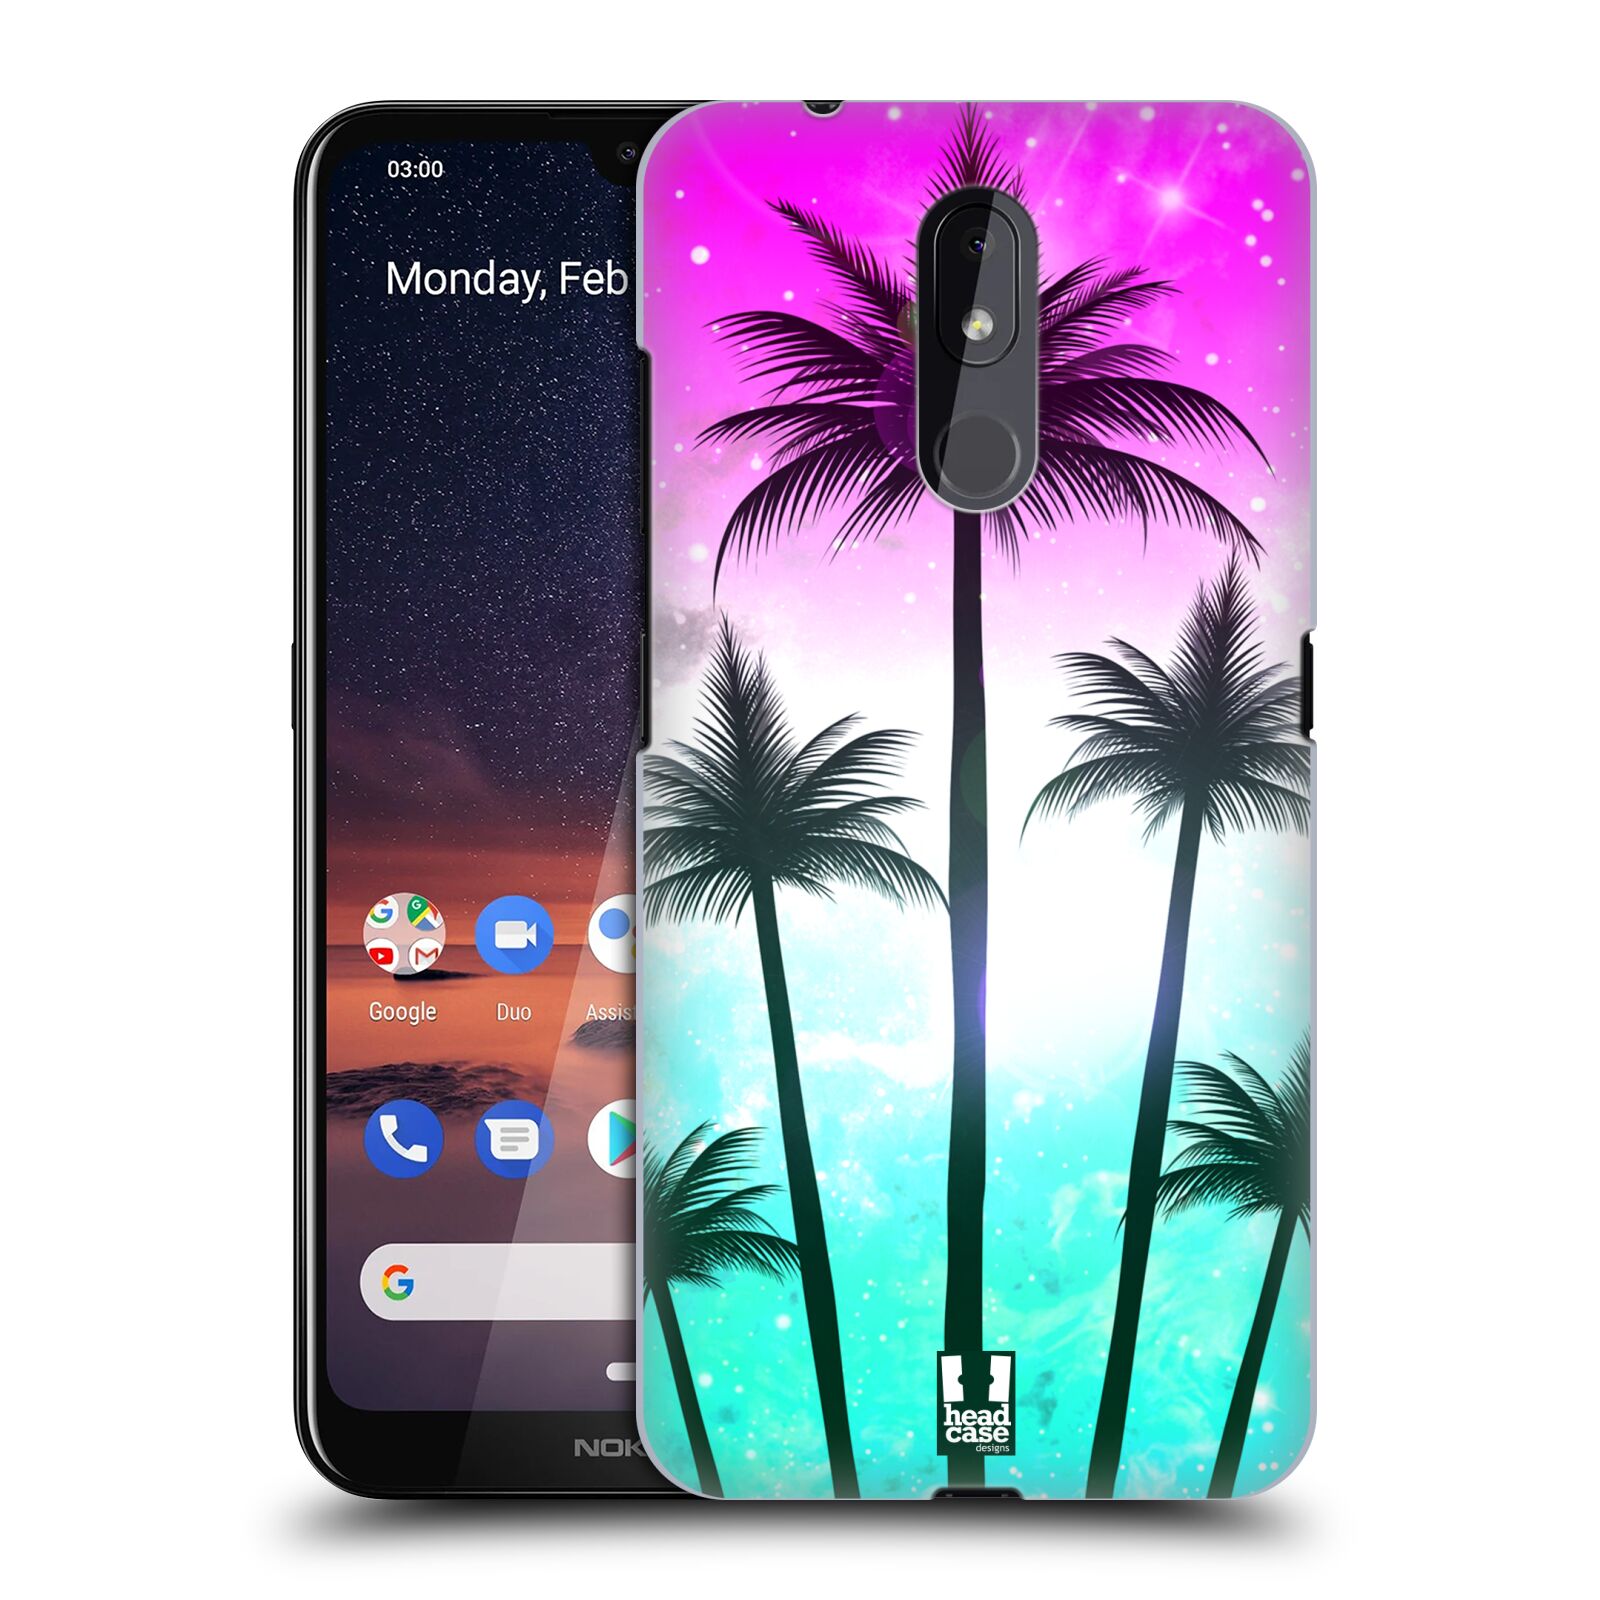 Pouzdro na mobil Nokia 3.2 - HEAD CASE - vzor Kreslený motiv silueta moře a palmy RŮŽOVÁ A TYRKYS